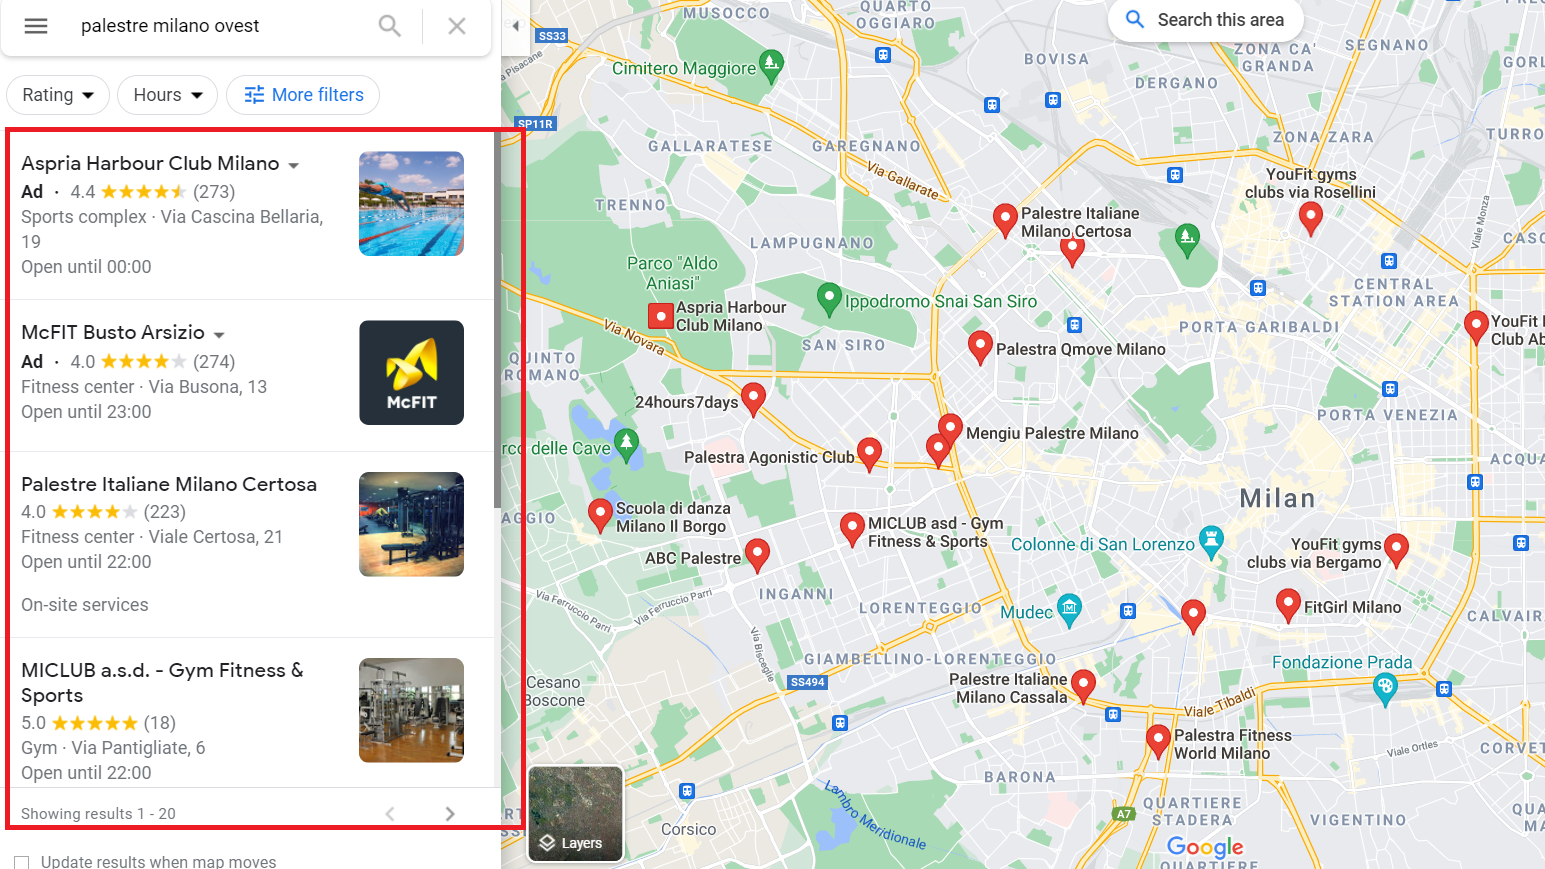 Risultati Google Maps per la keyword palestre milano ovest